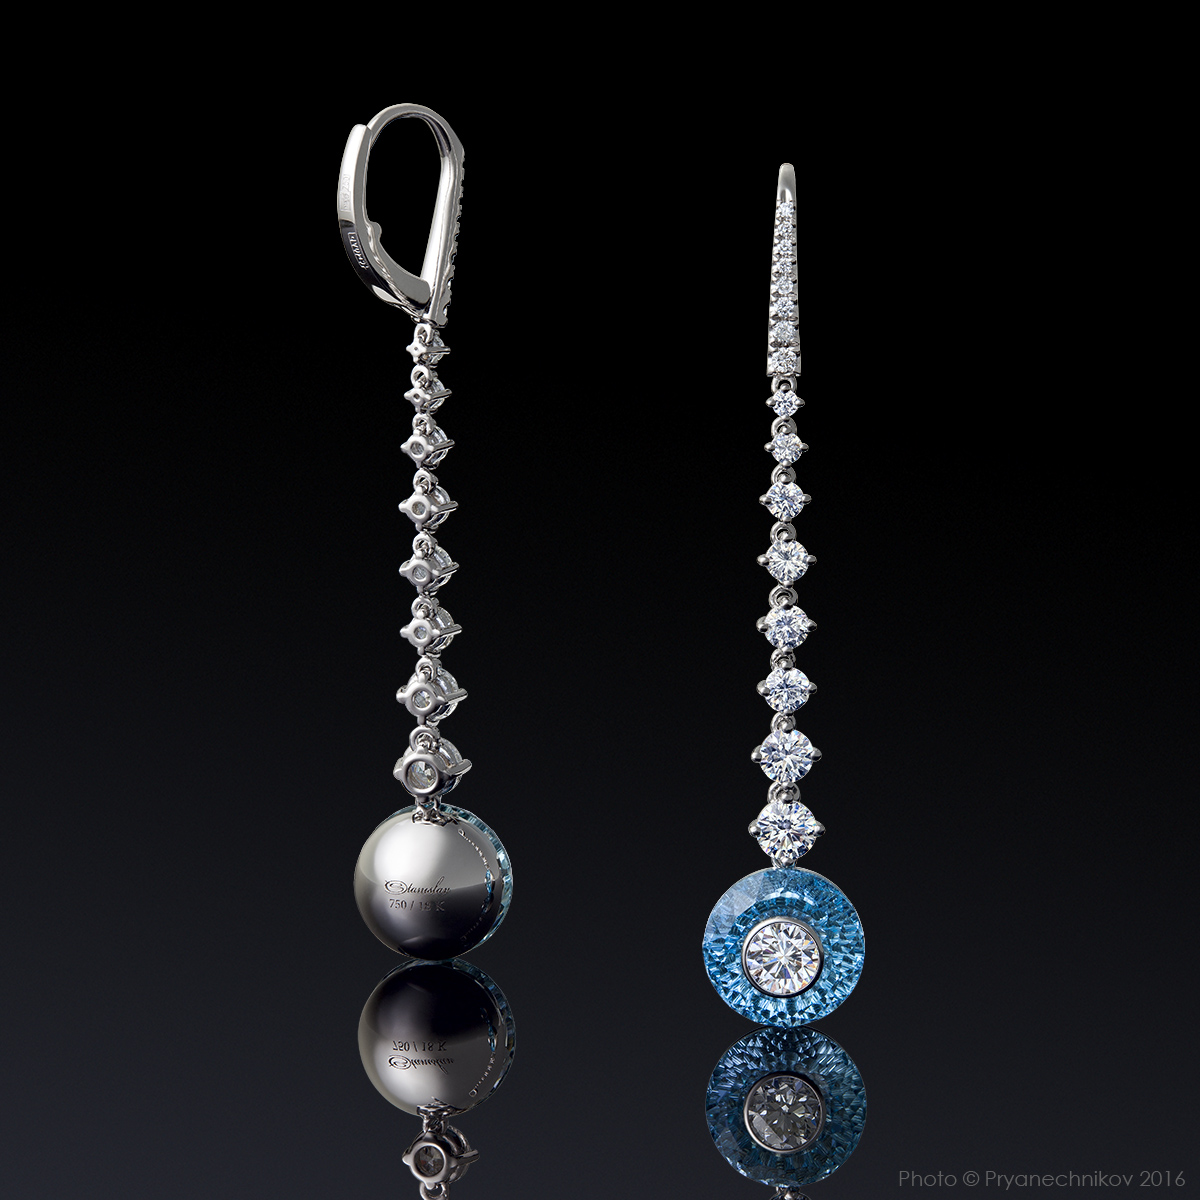 Рекламное фото ювелирных изделий с бриллиантами и драгоценными камнями